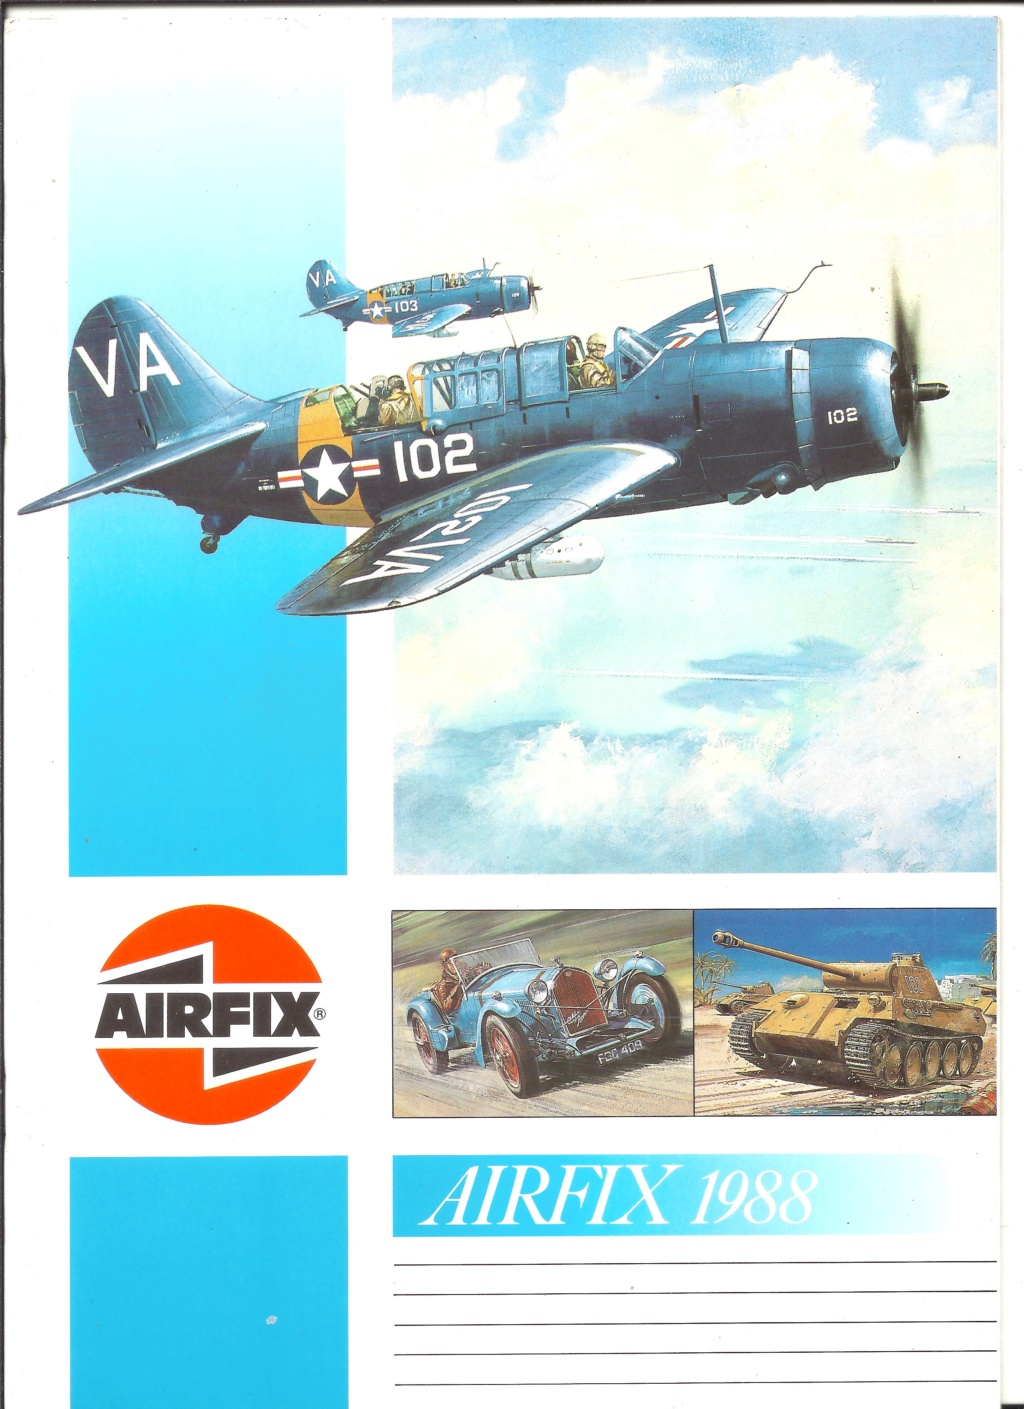 [AIRFIX 1988] Catalogue 1988 25ème édition Airfi140